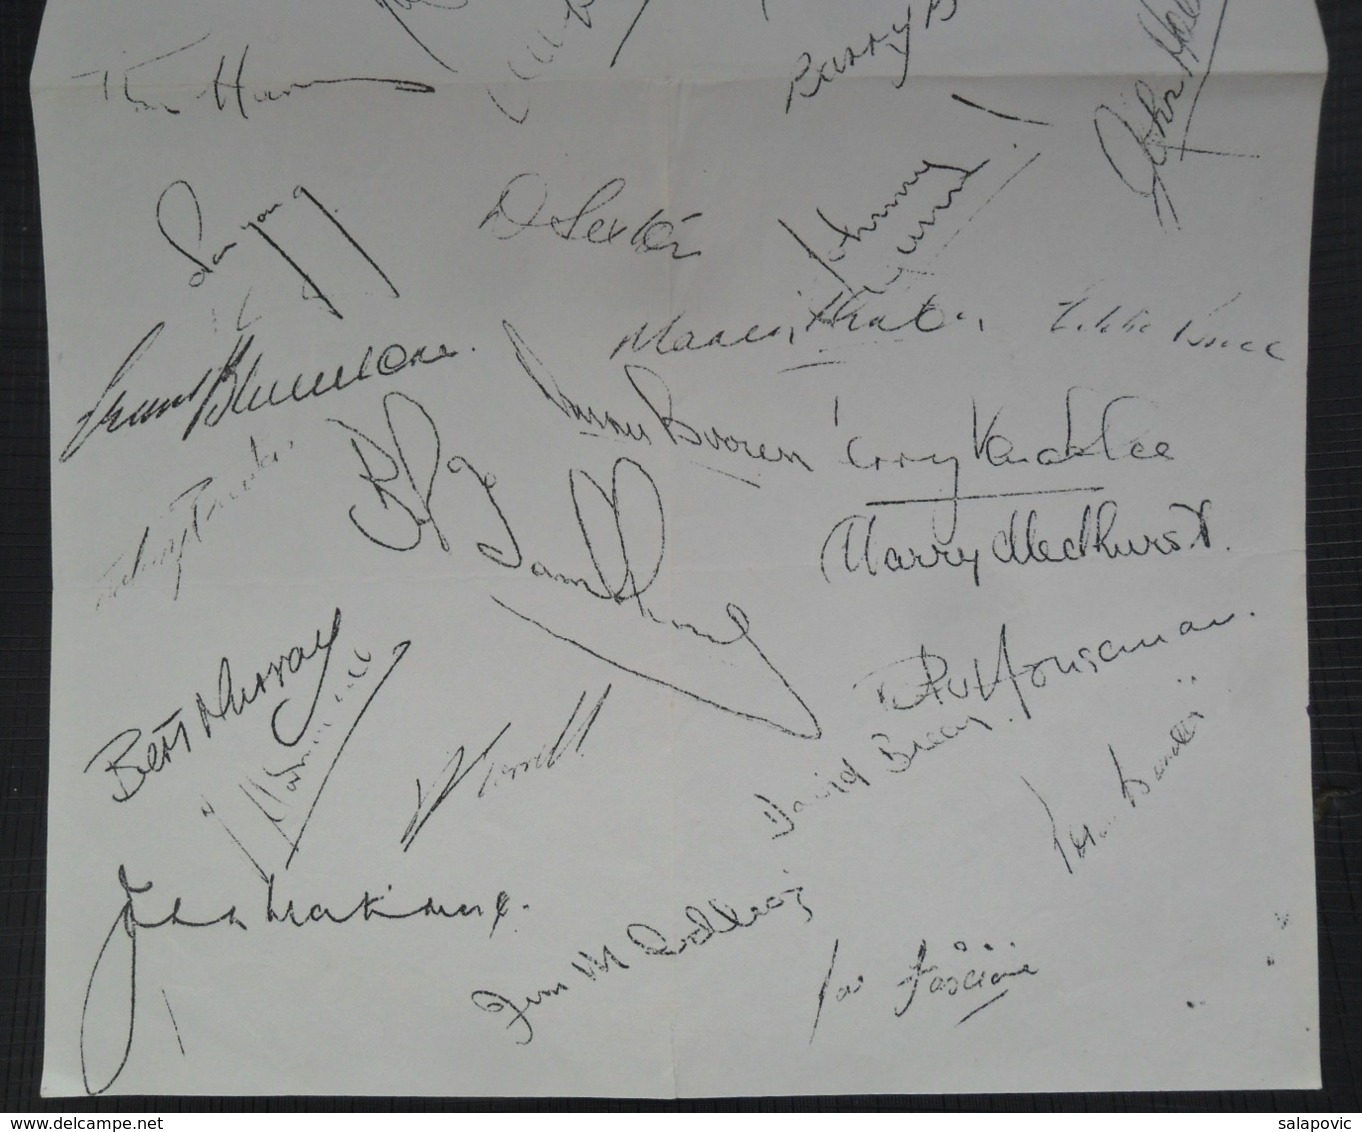 Chelsea F.C. Football Club Pre-Printed Autograph   FOOTBALL CALCIO Authograph SIGNATURE - Authographs